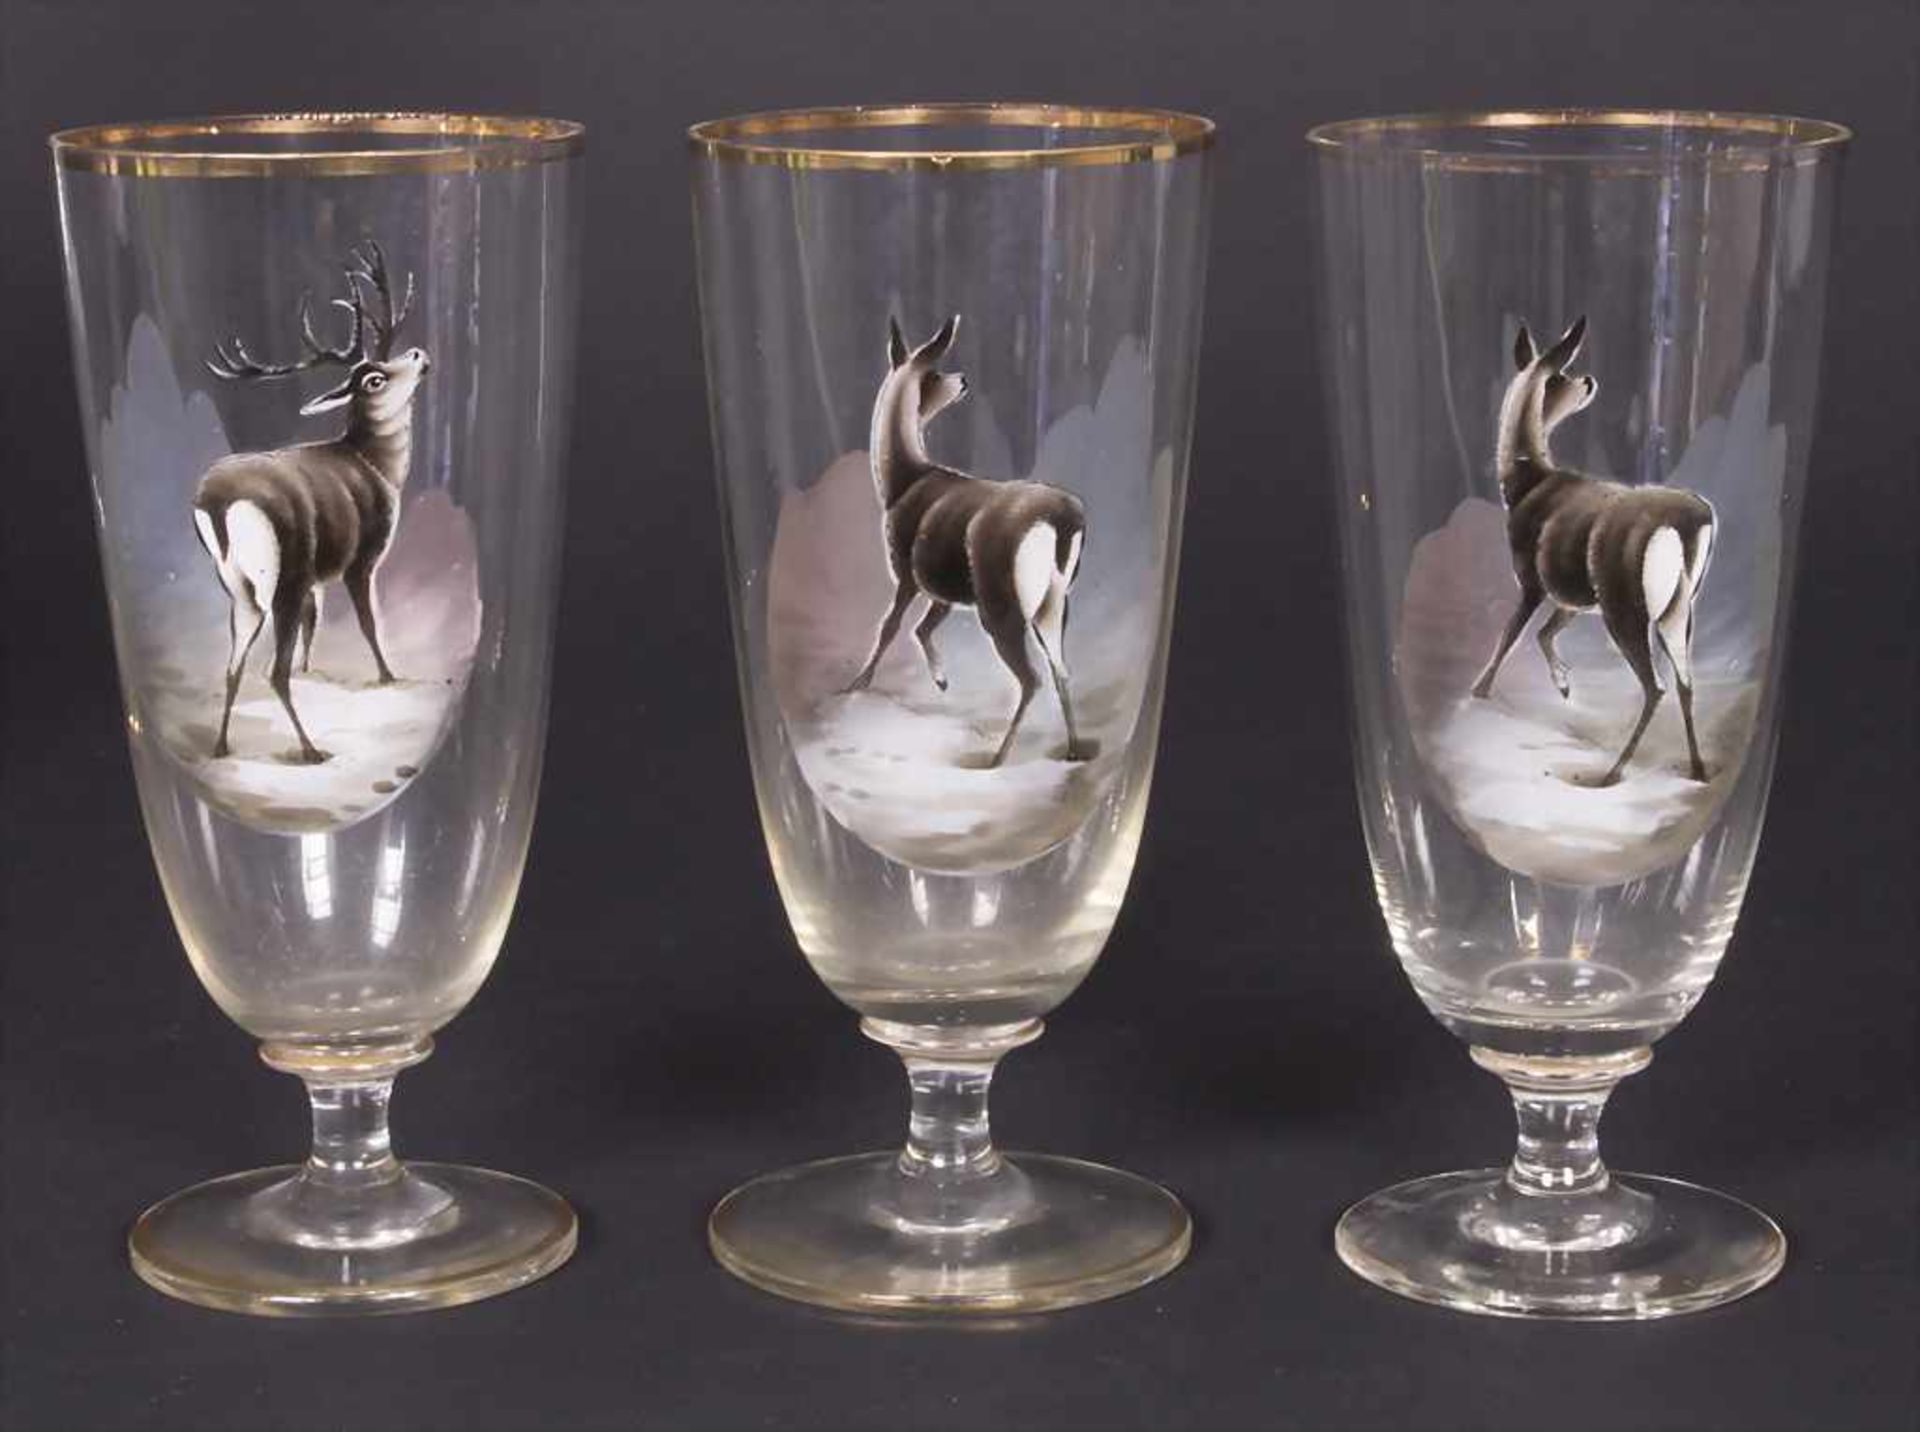 Saftkrug und 6 Gläser mit Hirschmotiven / A decanter and 6 glasses with deer decor, um 1900 - Bild 3 aus 6